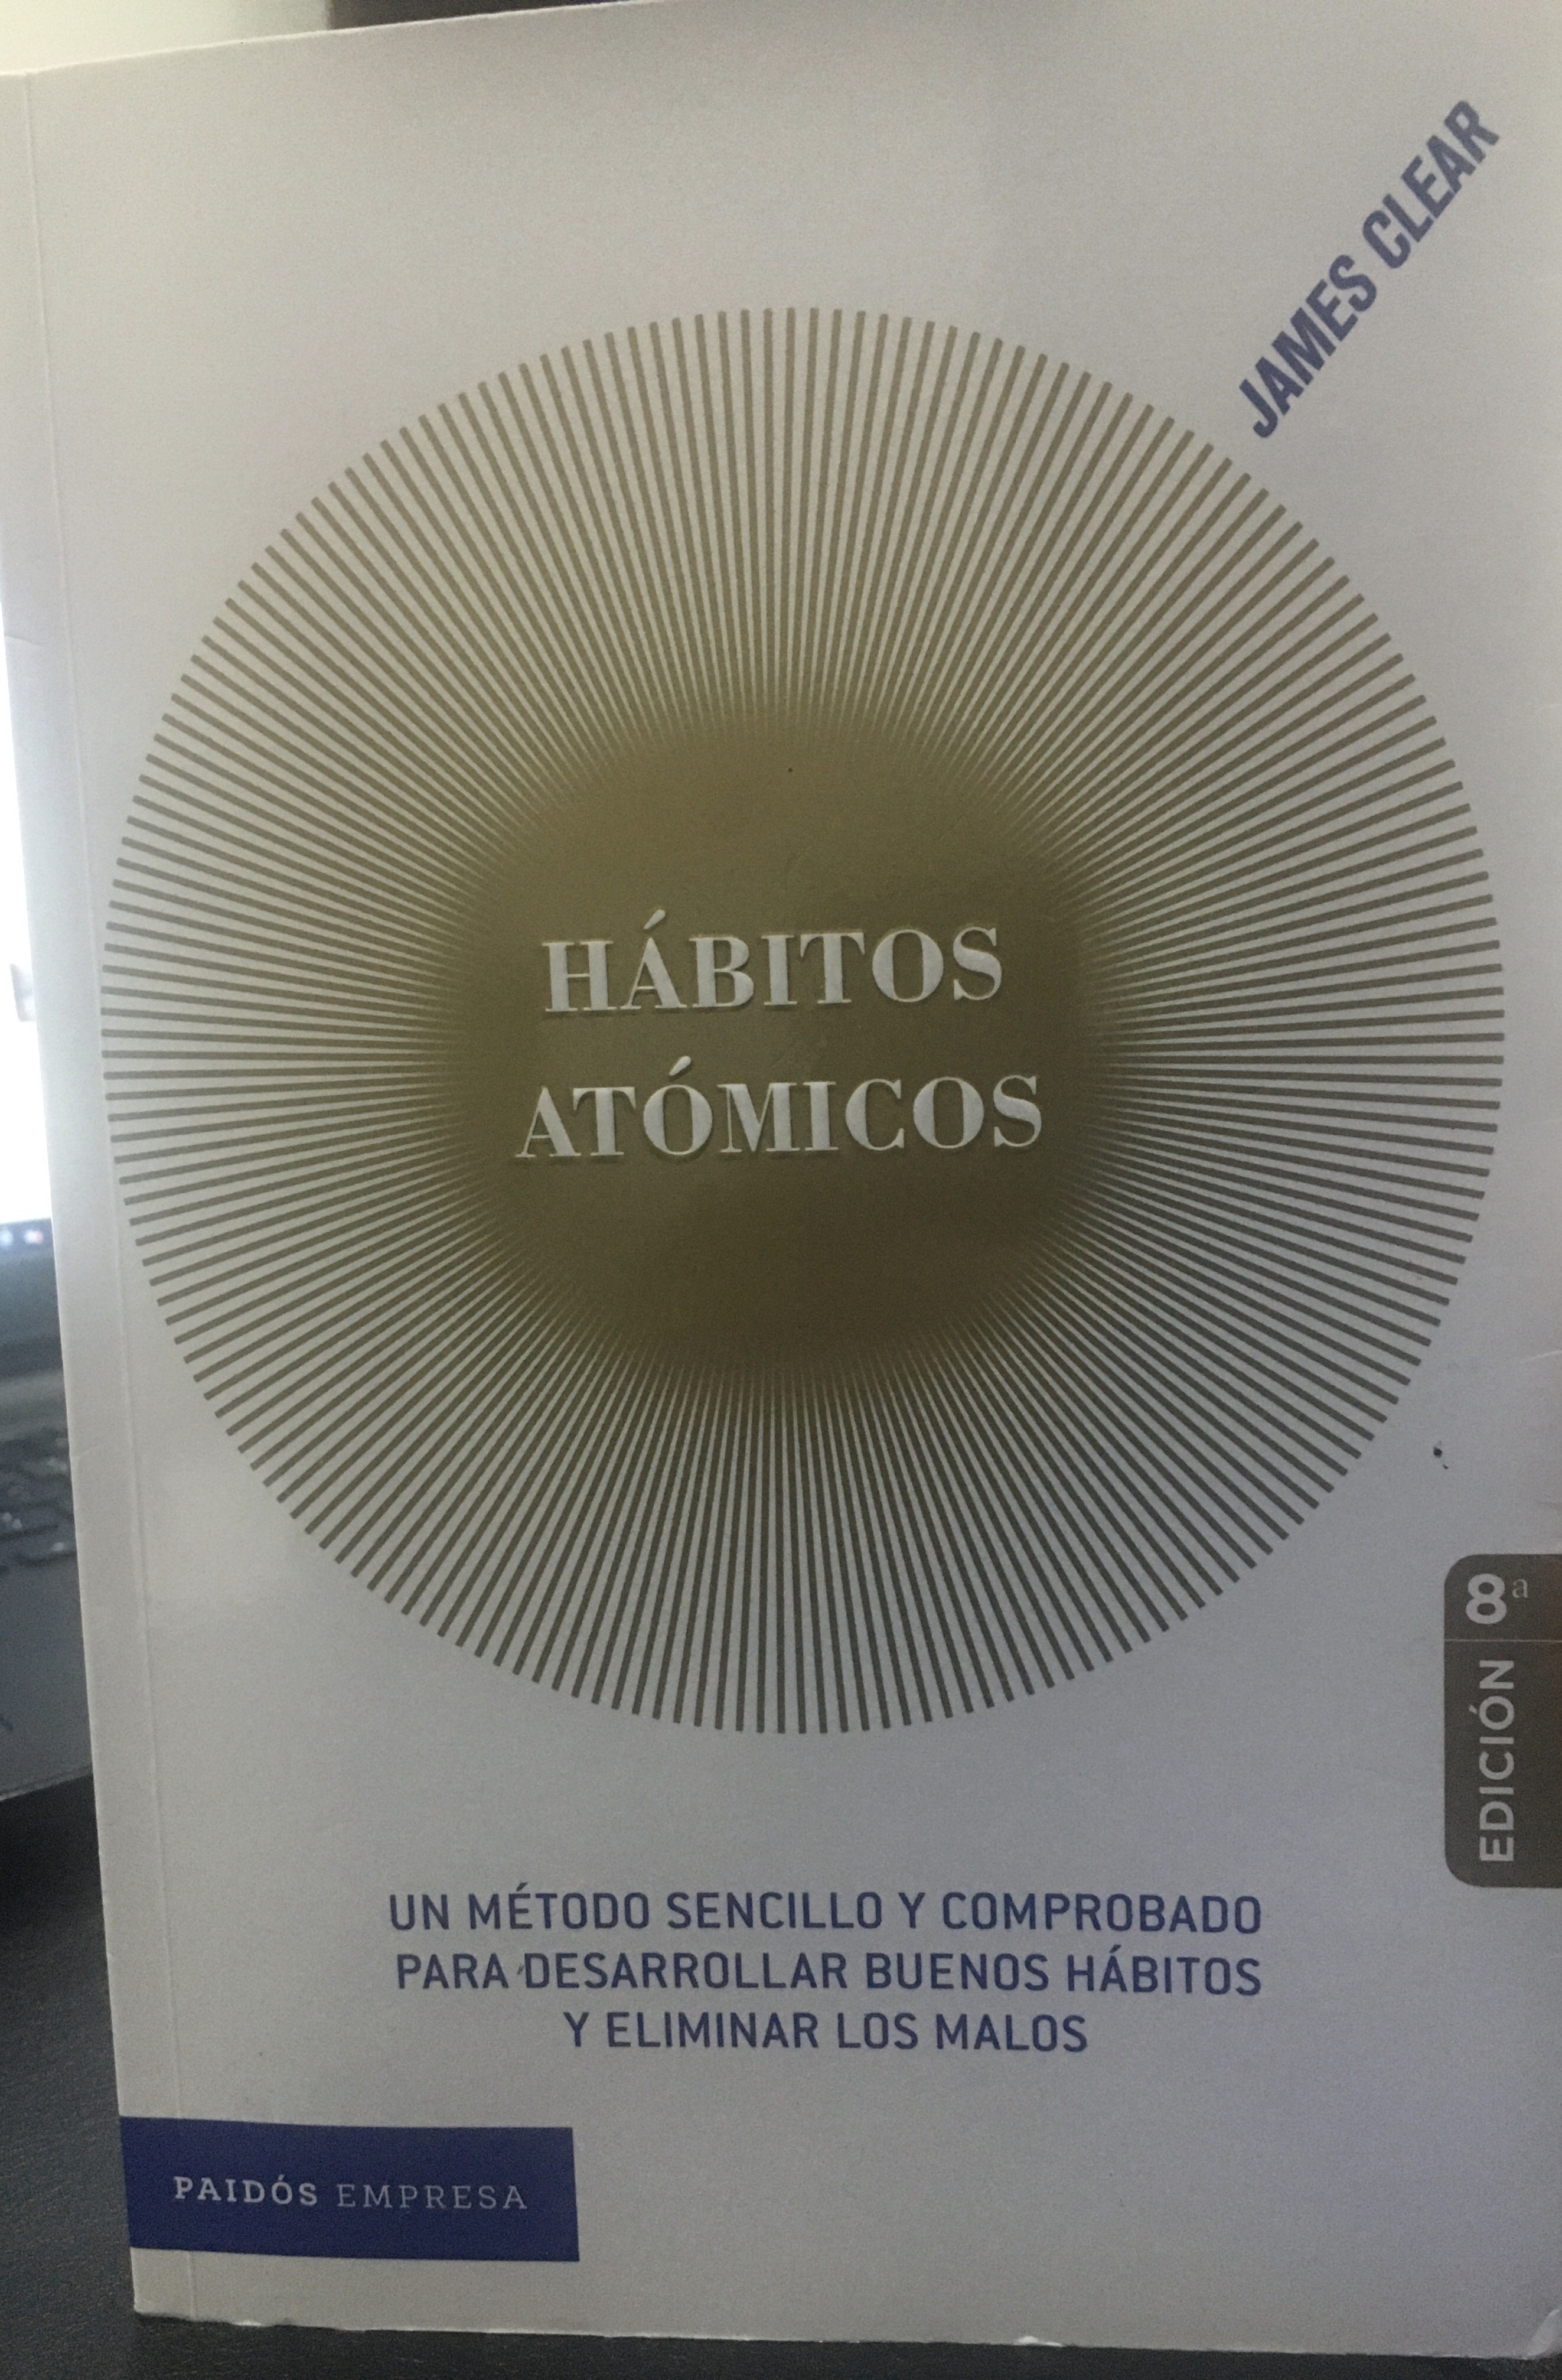 Hábitos Atómicos de James Clear - Resumen del libro